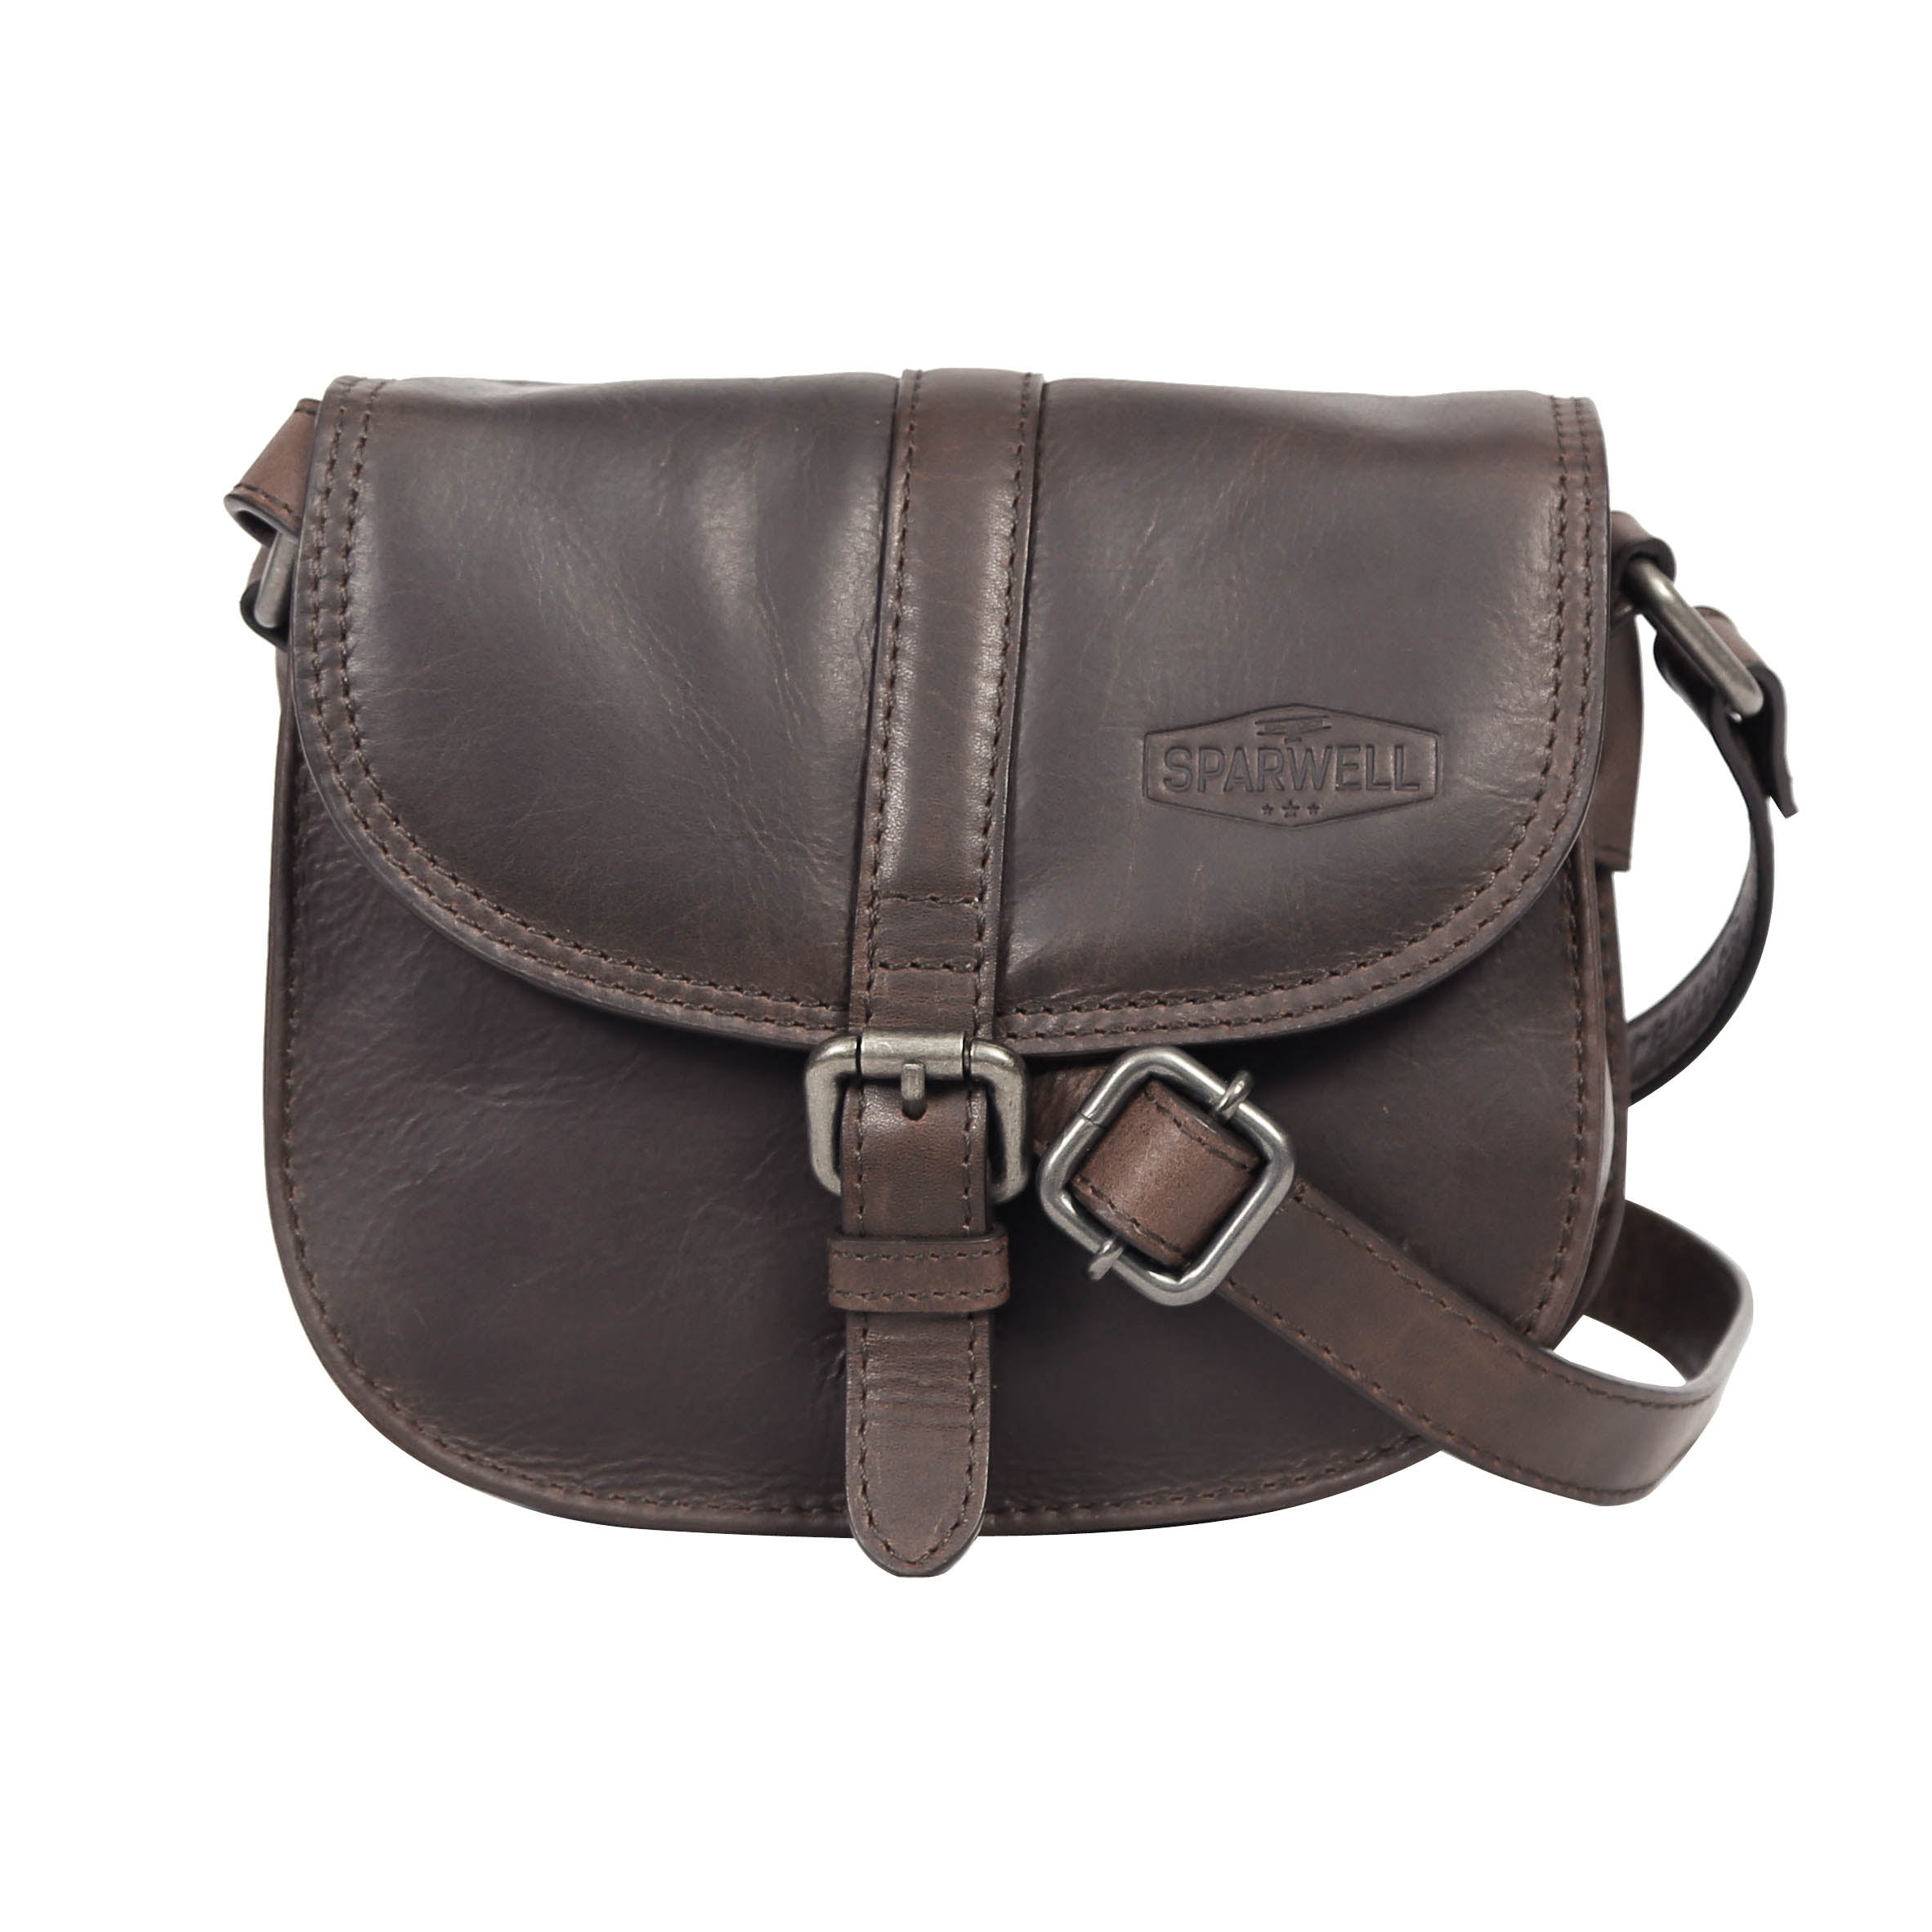 Creation- Leather shoulder bag / crossbody